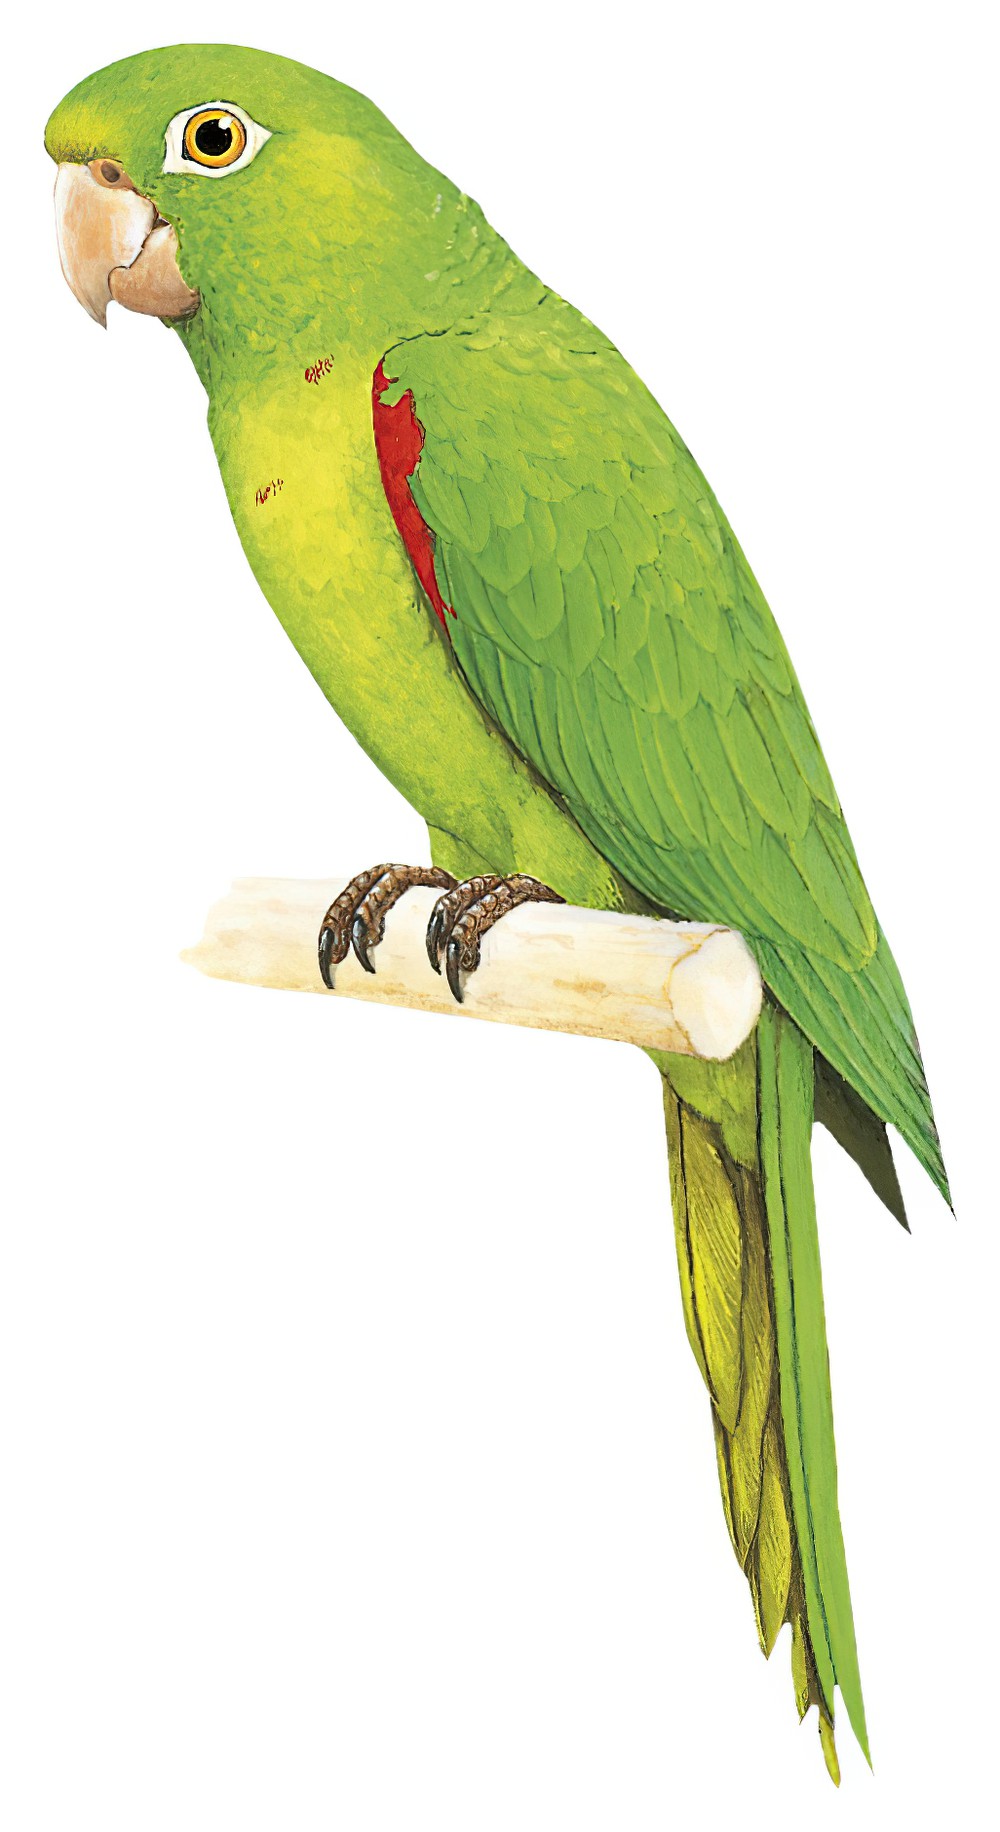 Hispaniolan Parakeet / Psittacara chloropterus